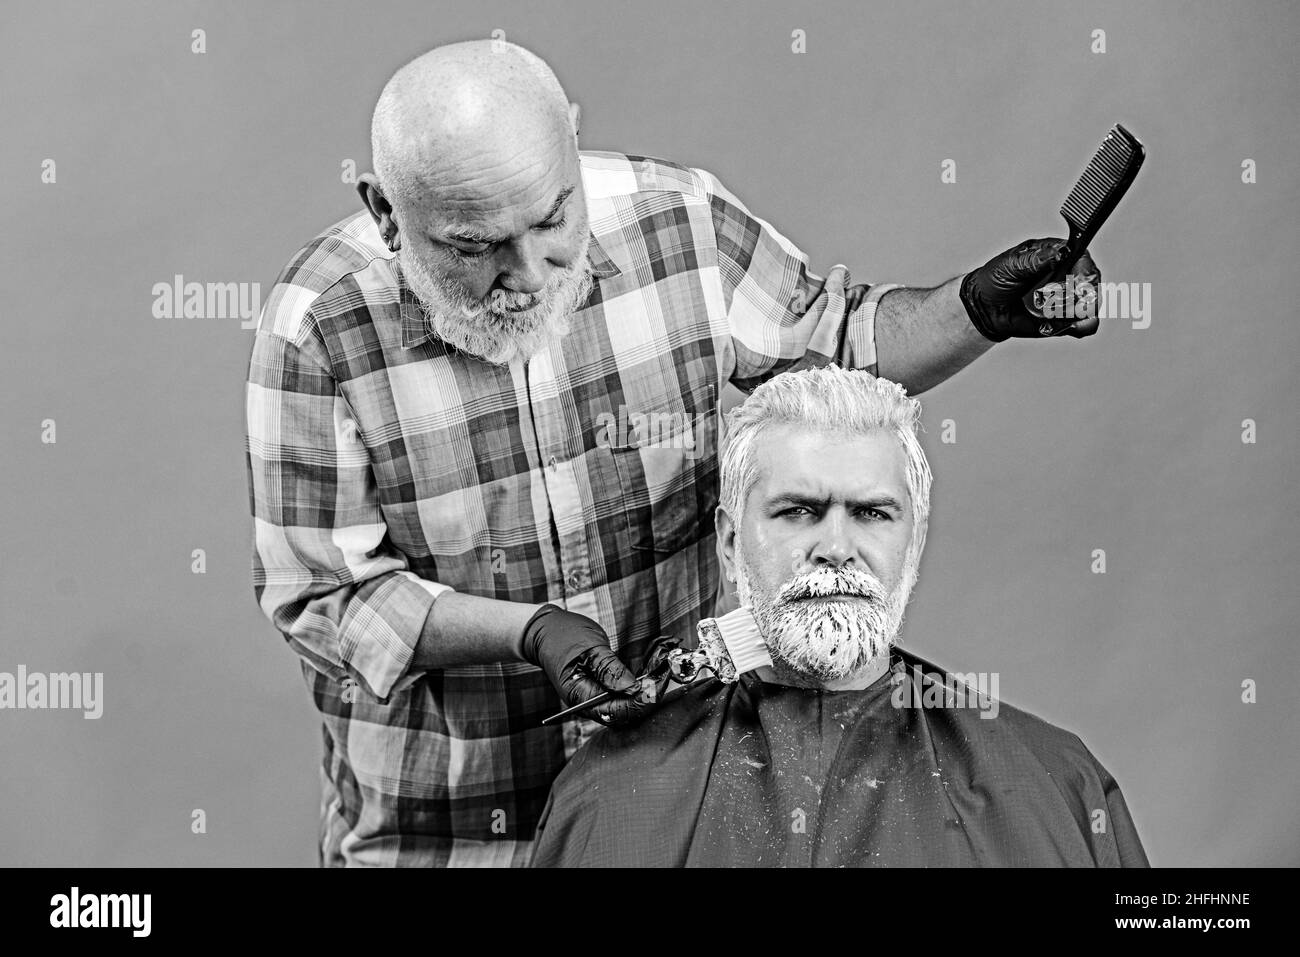 Trendy barber shop Banque d'images noir et blanc - Page 2 - Alamy